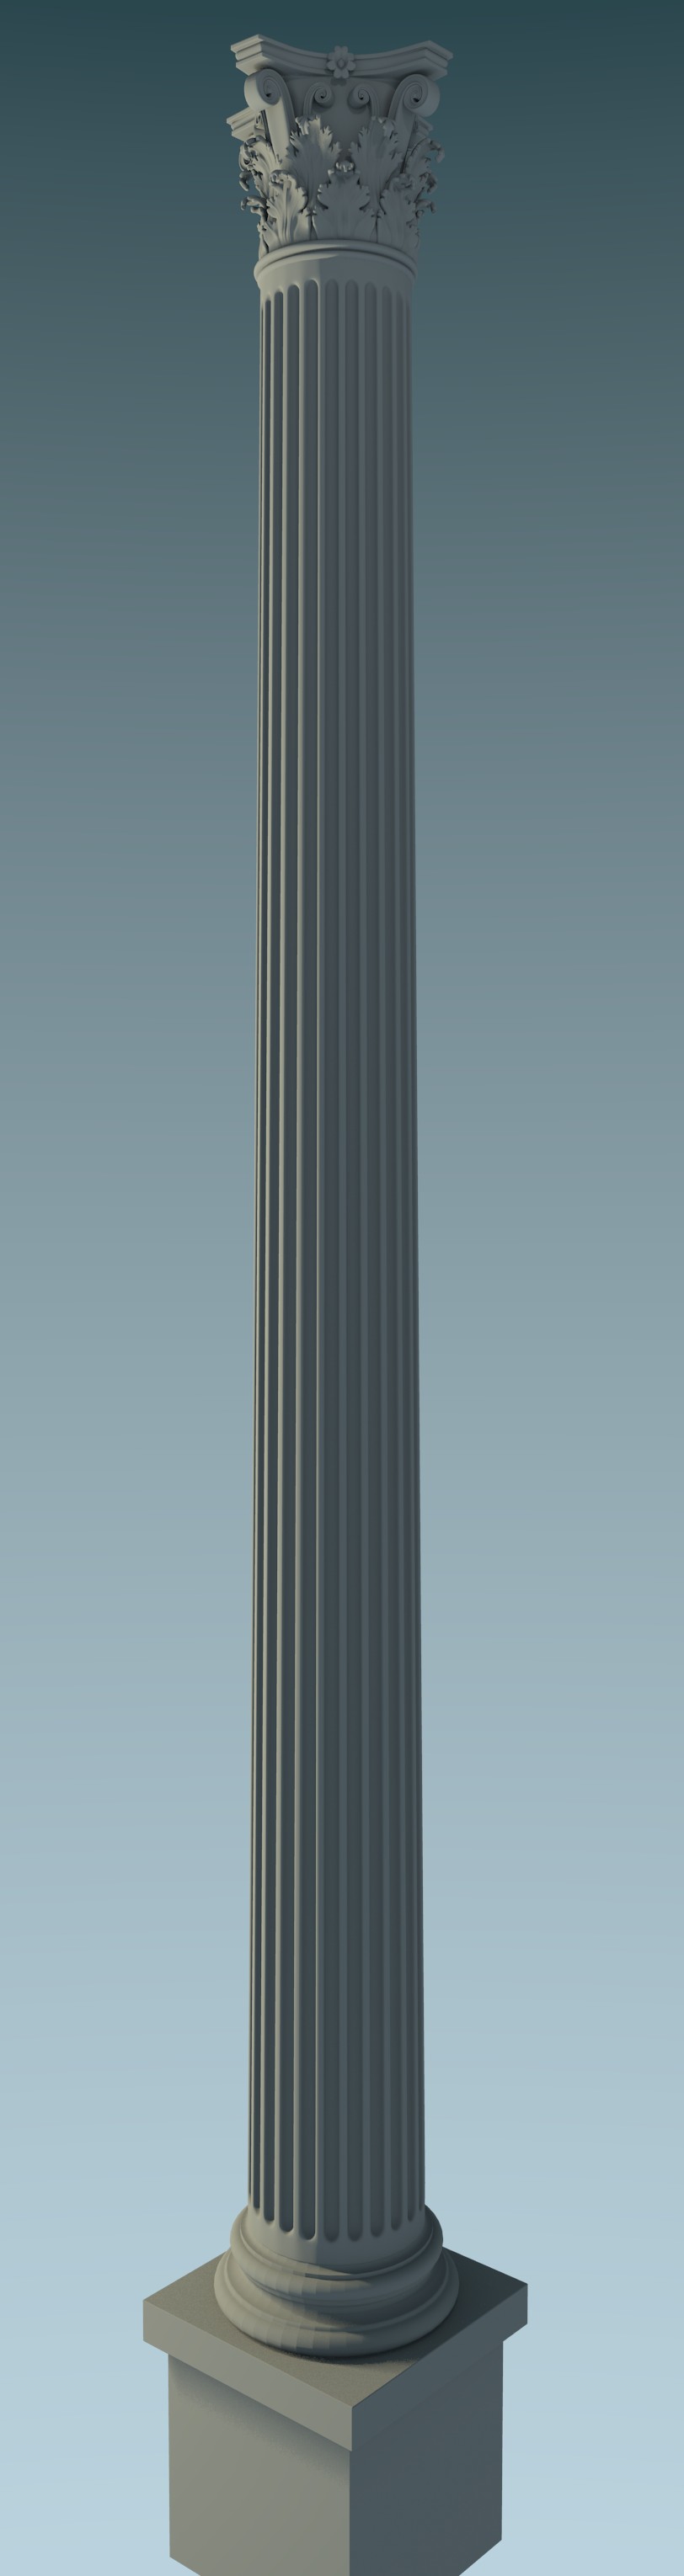 Corinthian Column preview image 1